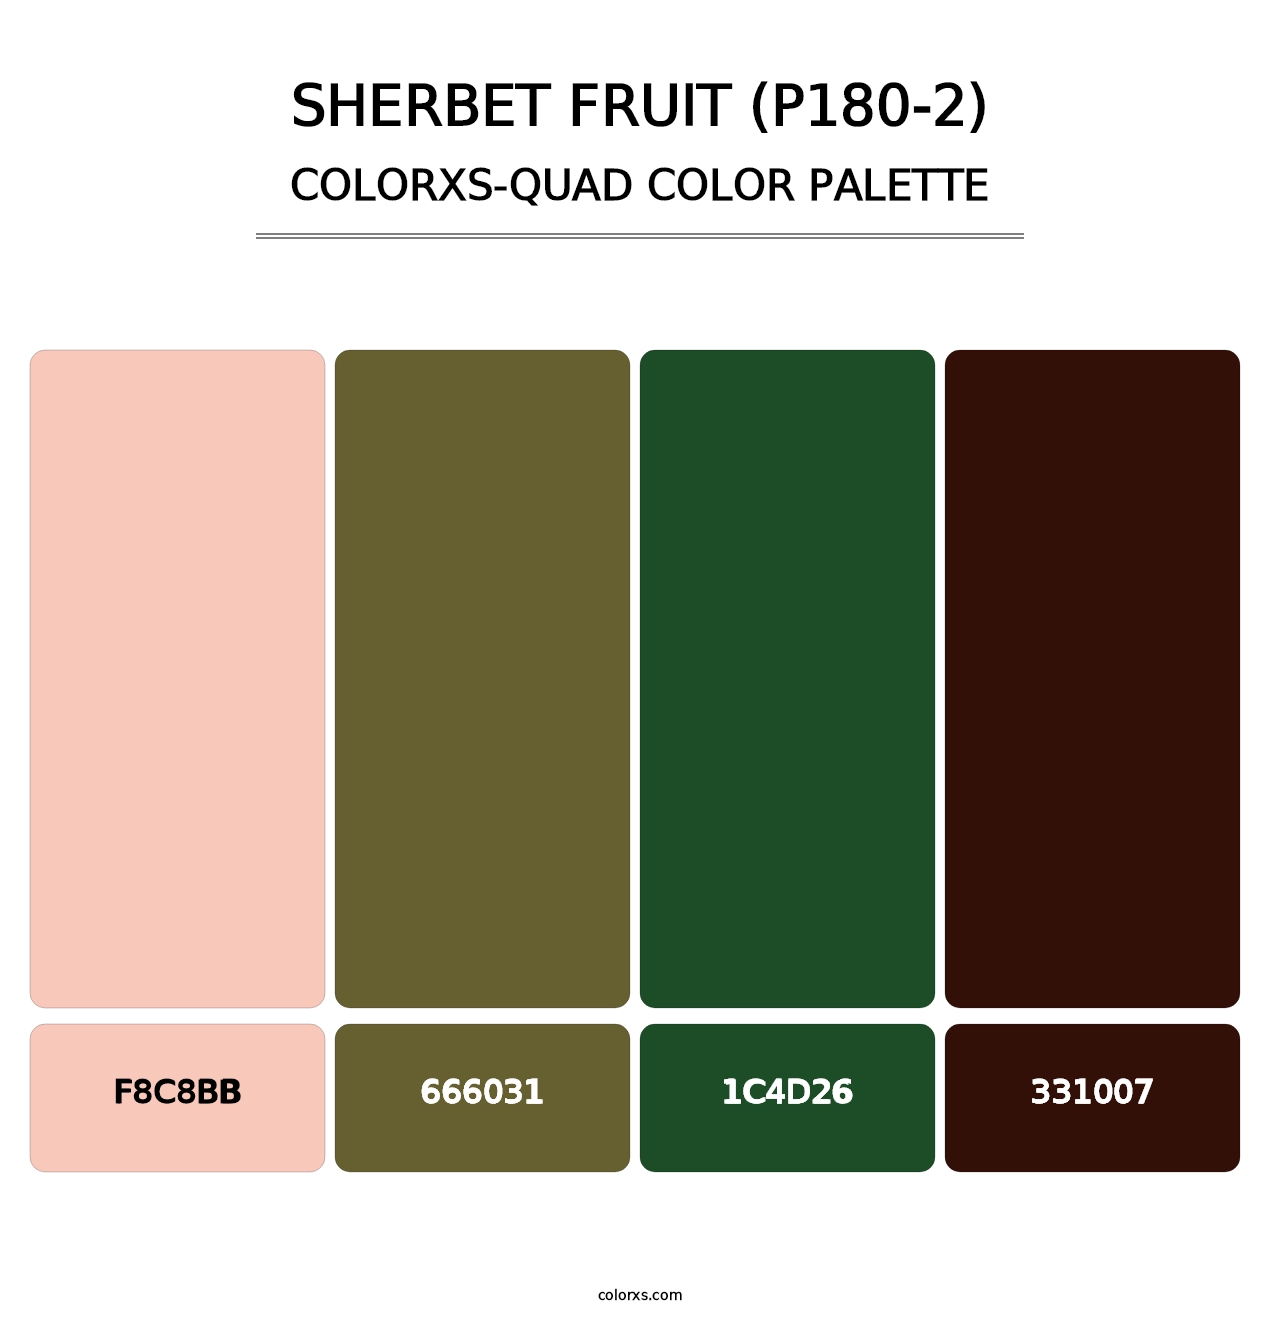 Sherbet Fruit (P180-2) - Colorxs Quad Palette